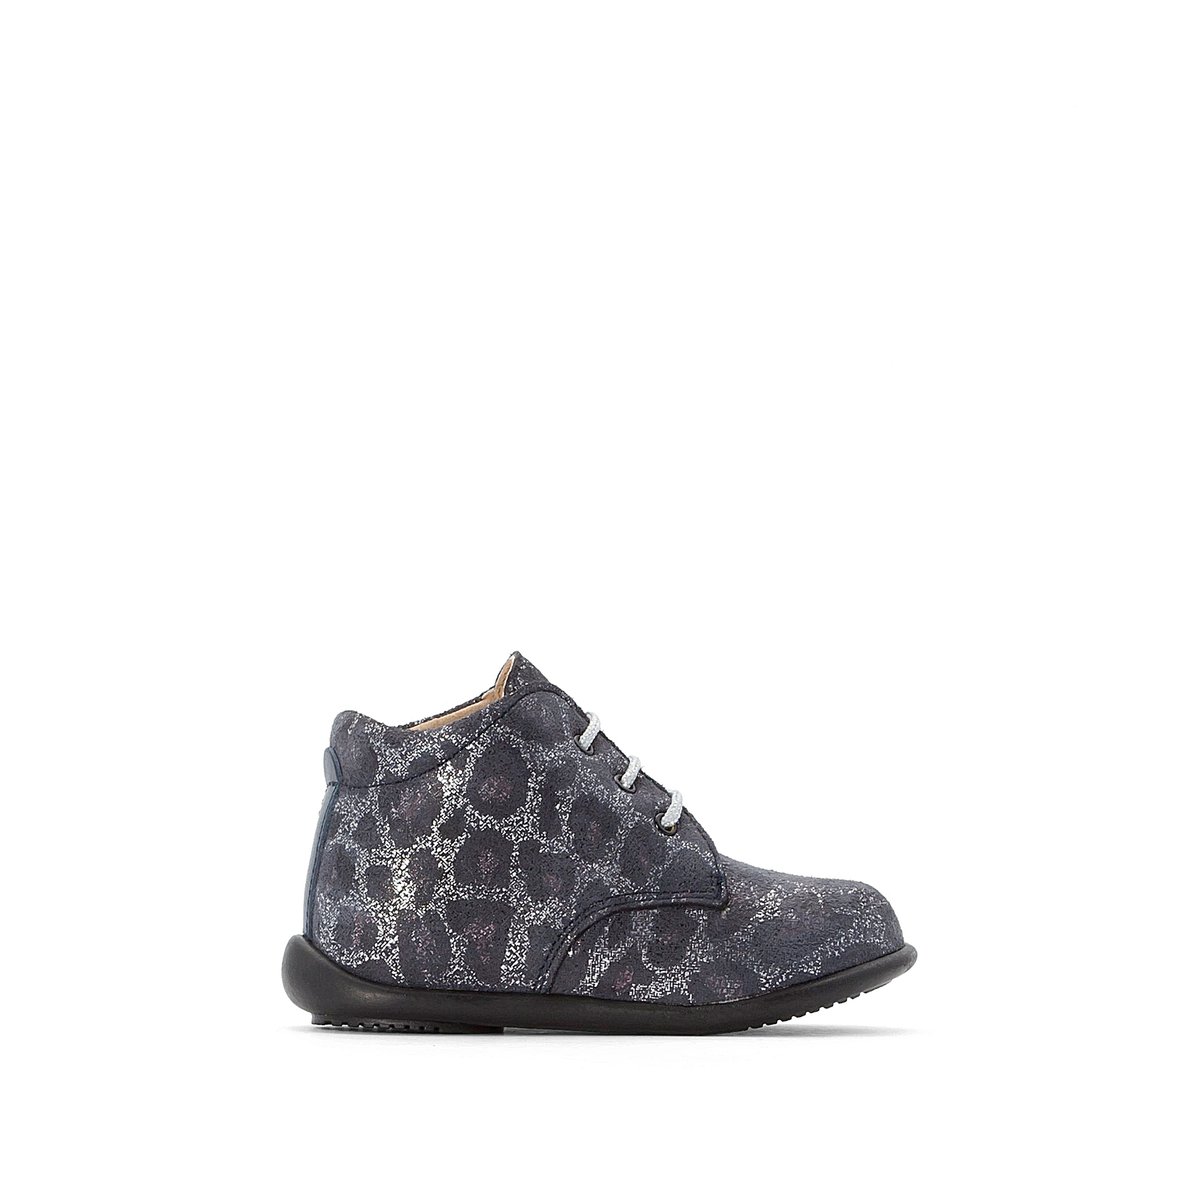 

Ботинки La Redoute, Каштановый, Кожаные на шнуровке с рисунком пантера размеры - 22 каштановый